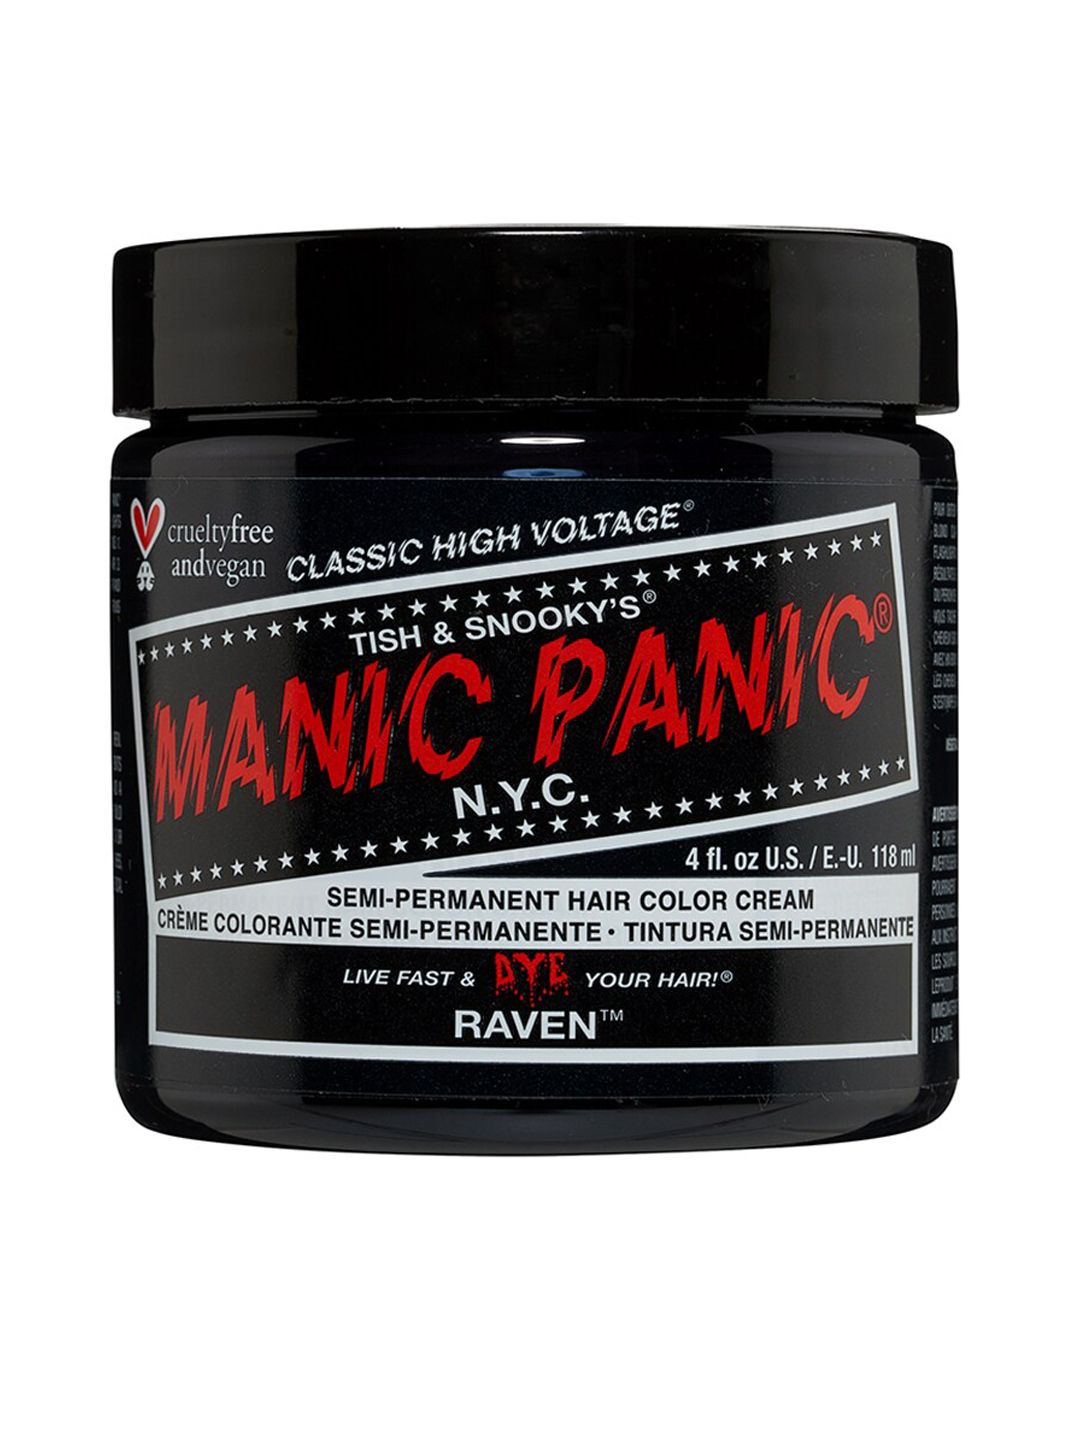 MANIC PANIC Classic High Voltage Semi-Permanent Hair Colour Cream - Raven Price in India